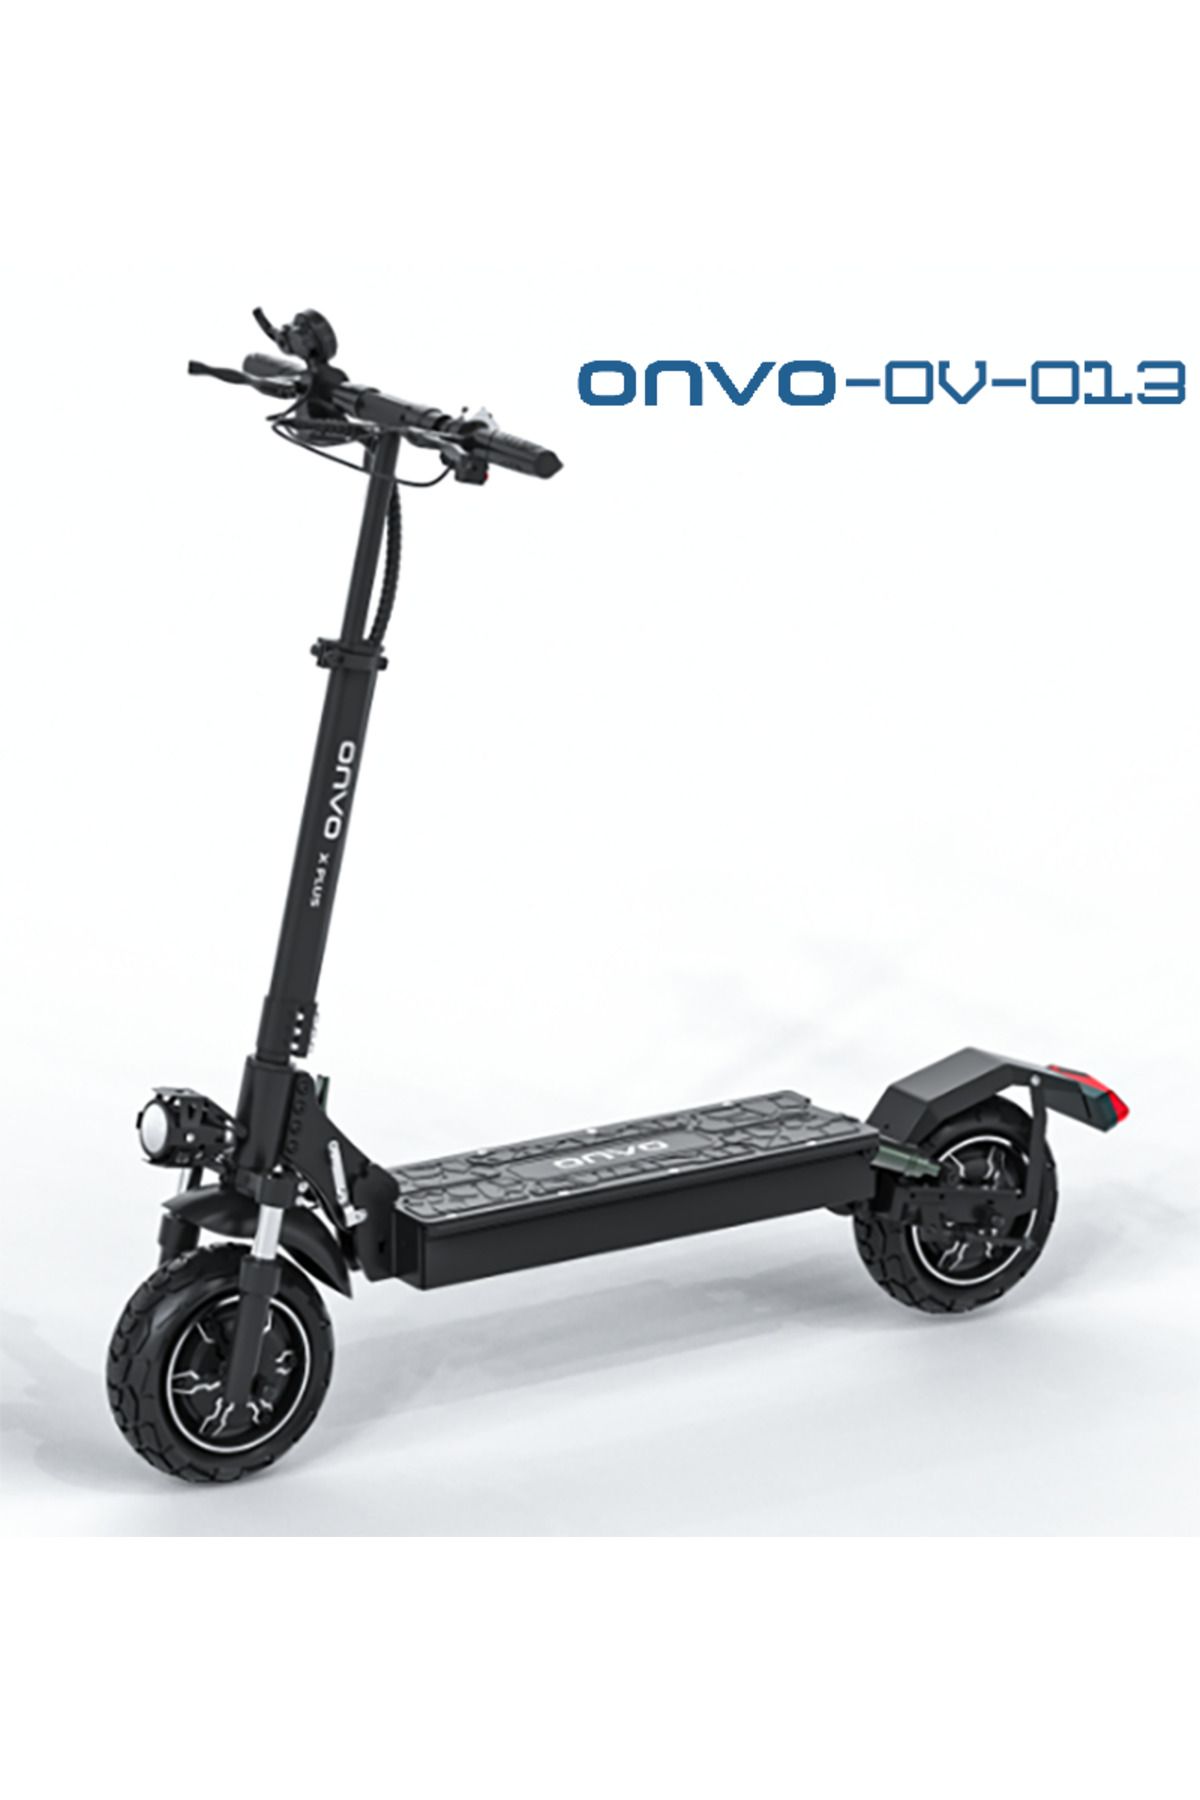 ONVO OV-013 -1000 W E-SCOOTER